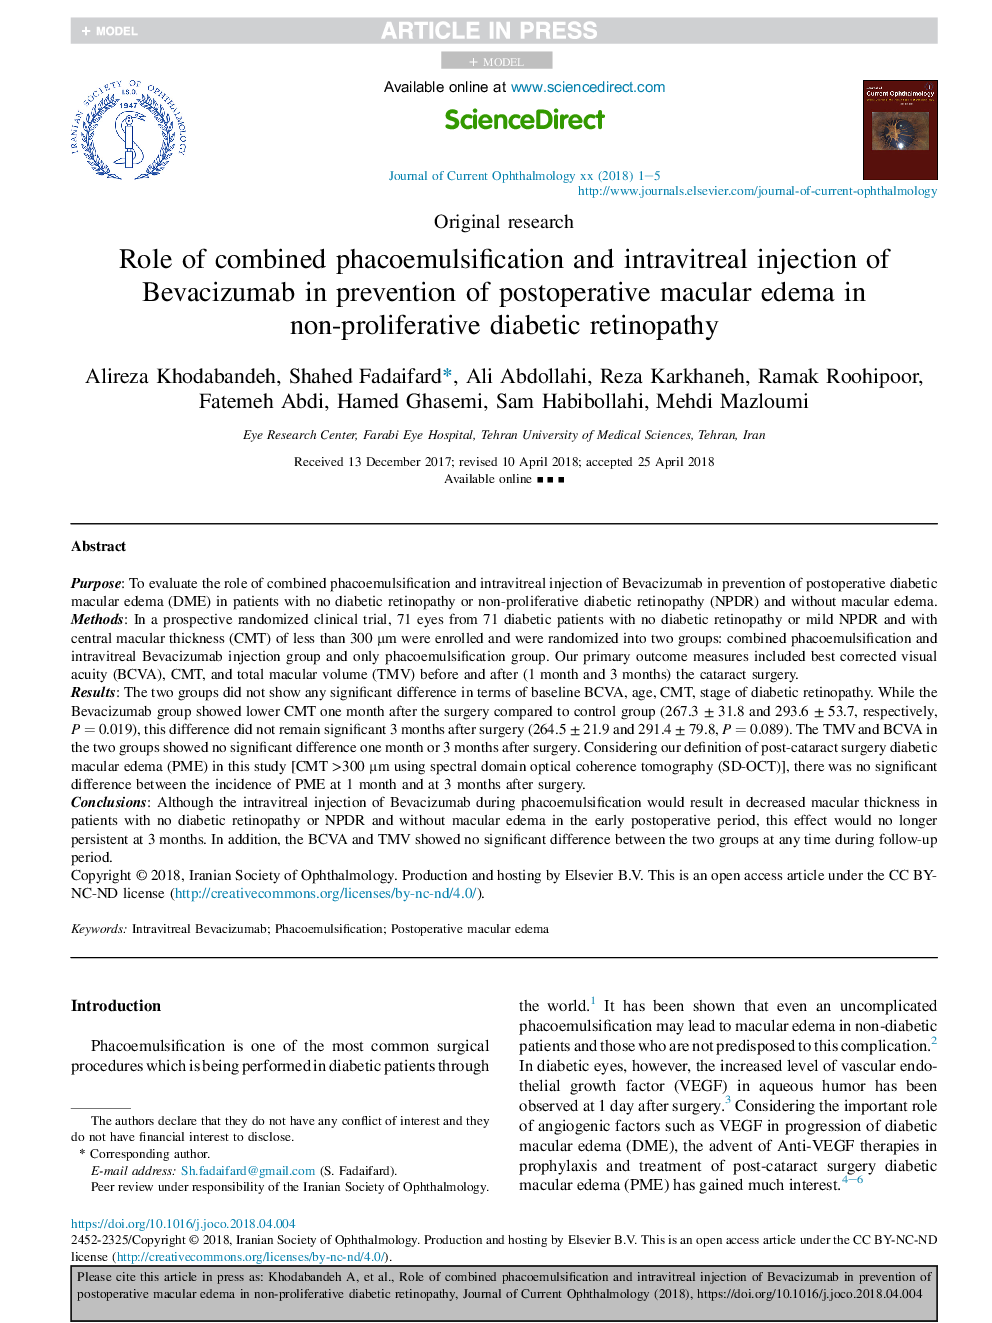 نقش فاکوامولسکوسی ترکیبی و تزریق داخل فیبری بواکسیونوماب در پیشگیری از ادم ماکولا پس از عمل در رتینوپاتی دیابتی غیر پرولیفراتیو